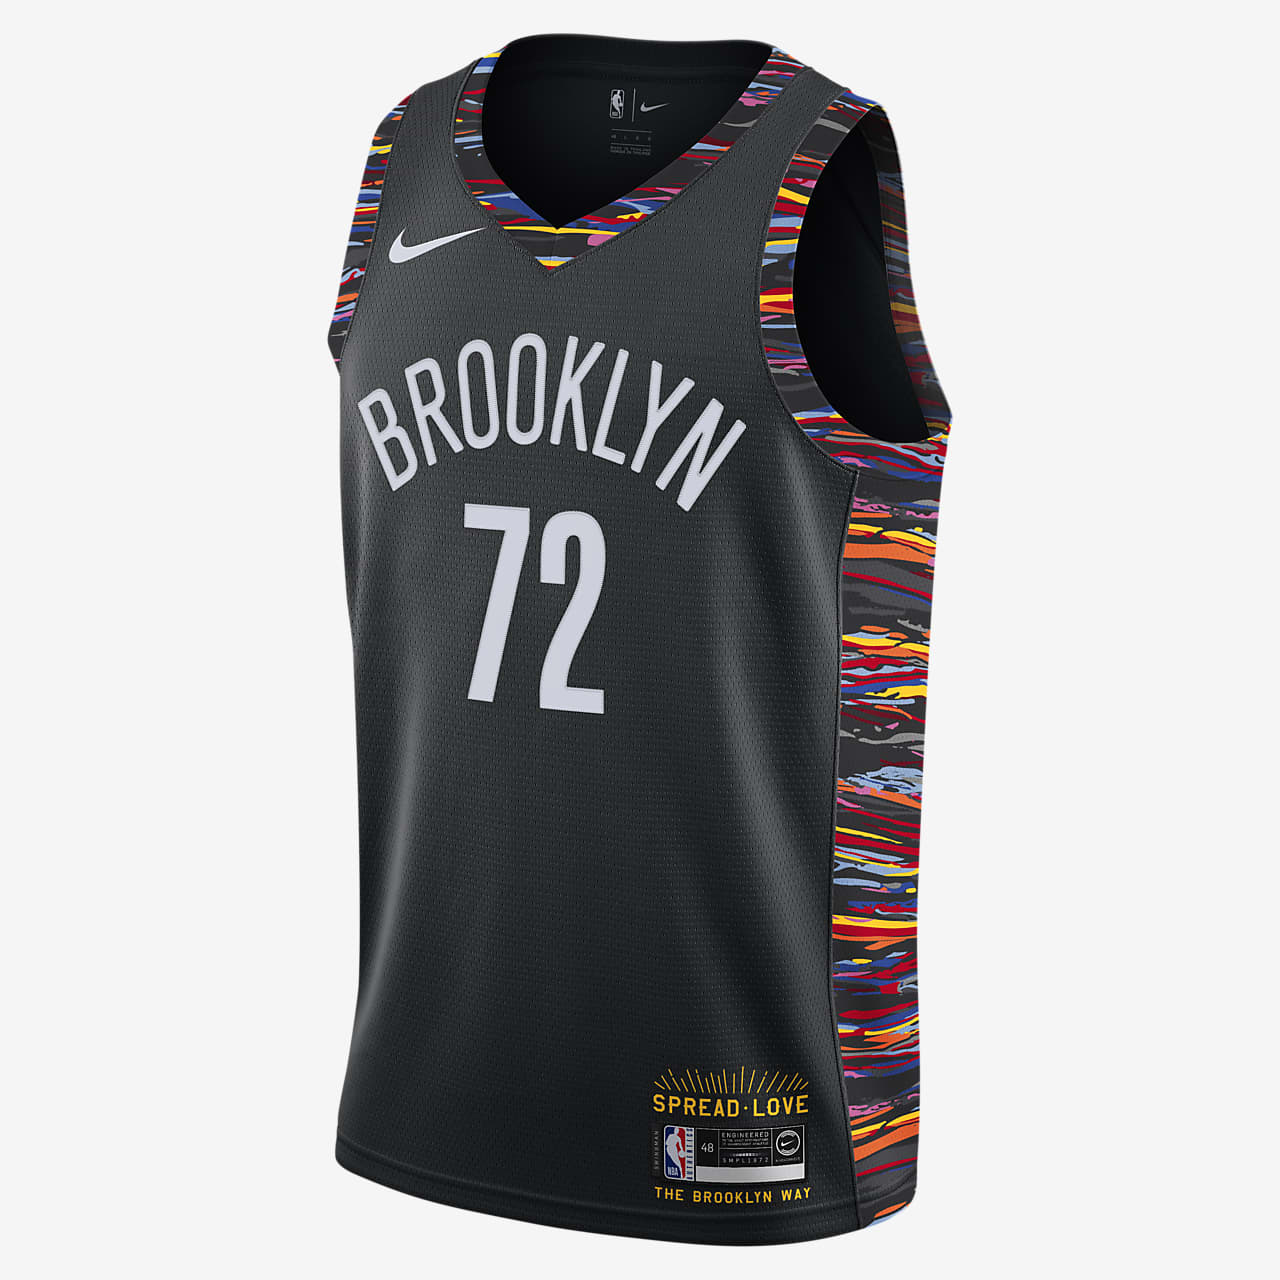 brooklyn basketball jersey uk